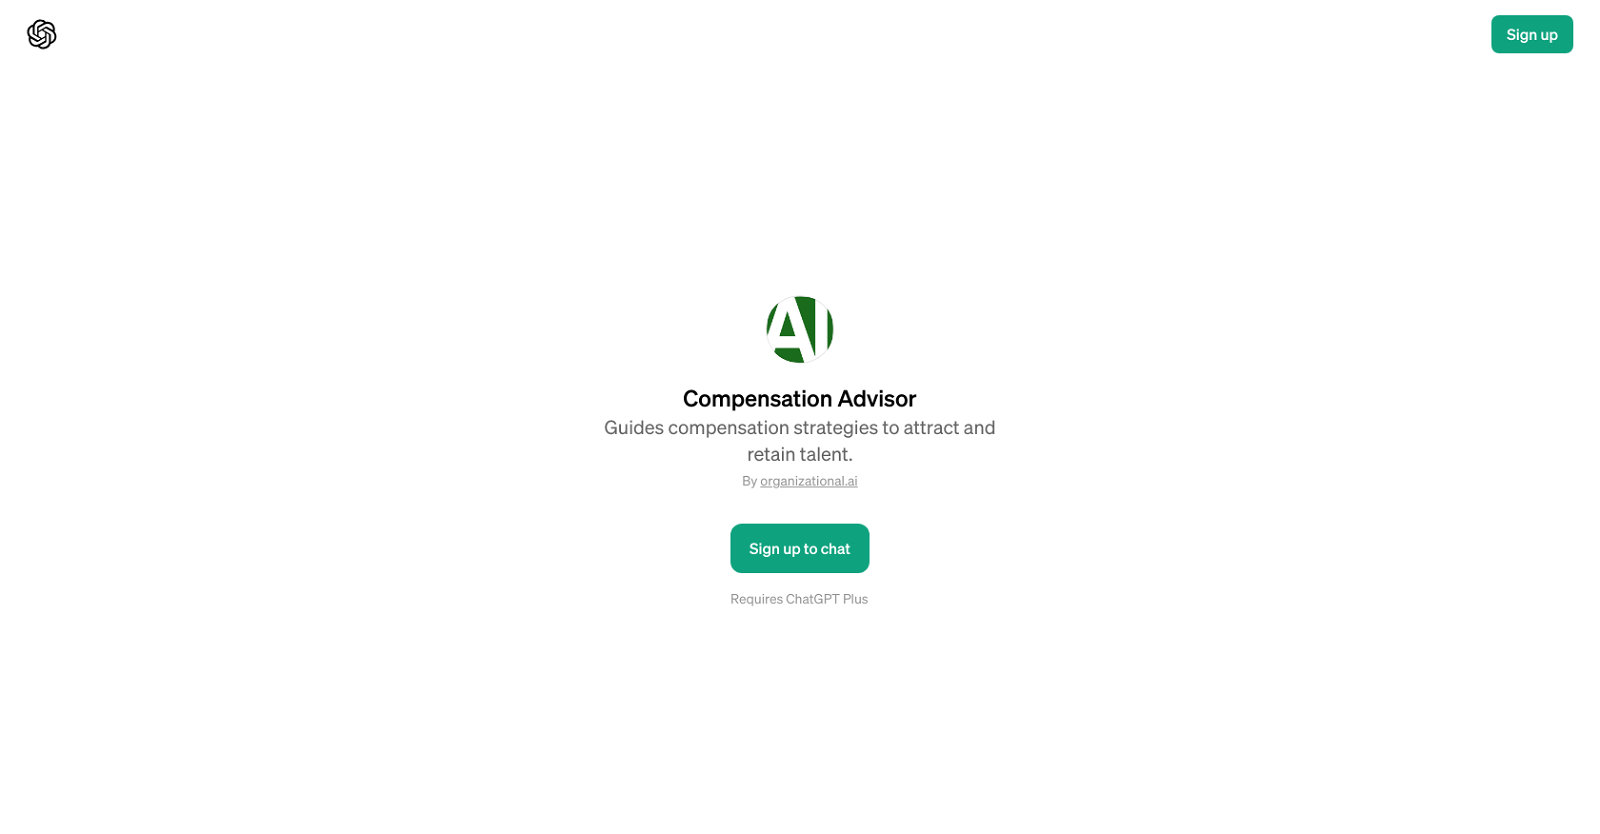 Compensation Advisor website